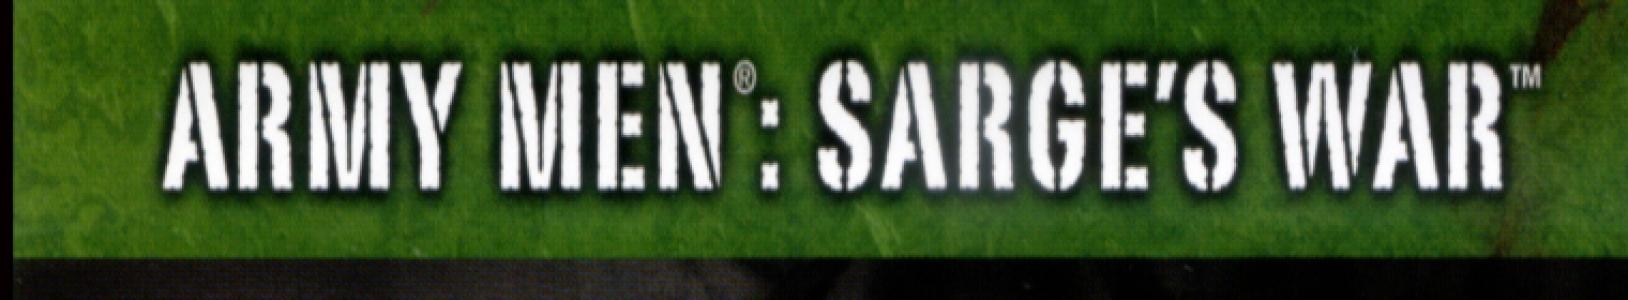 Army Men: Sarge's War banner